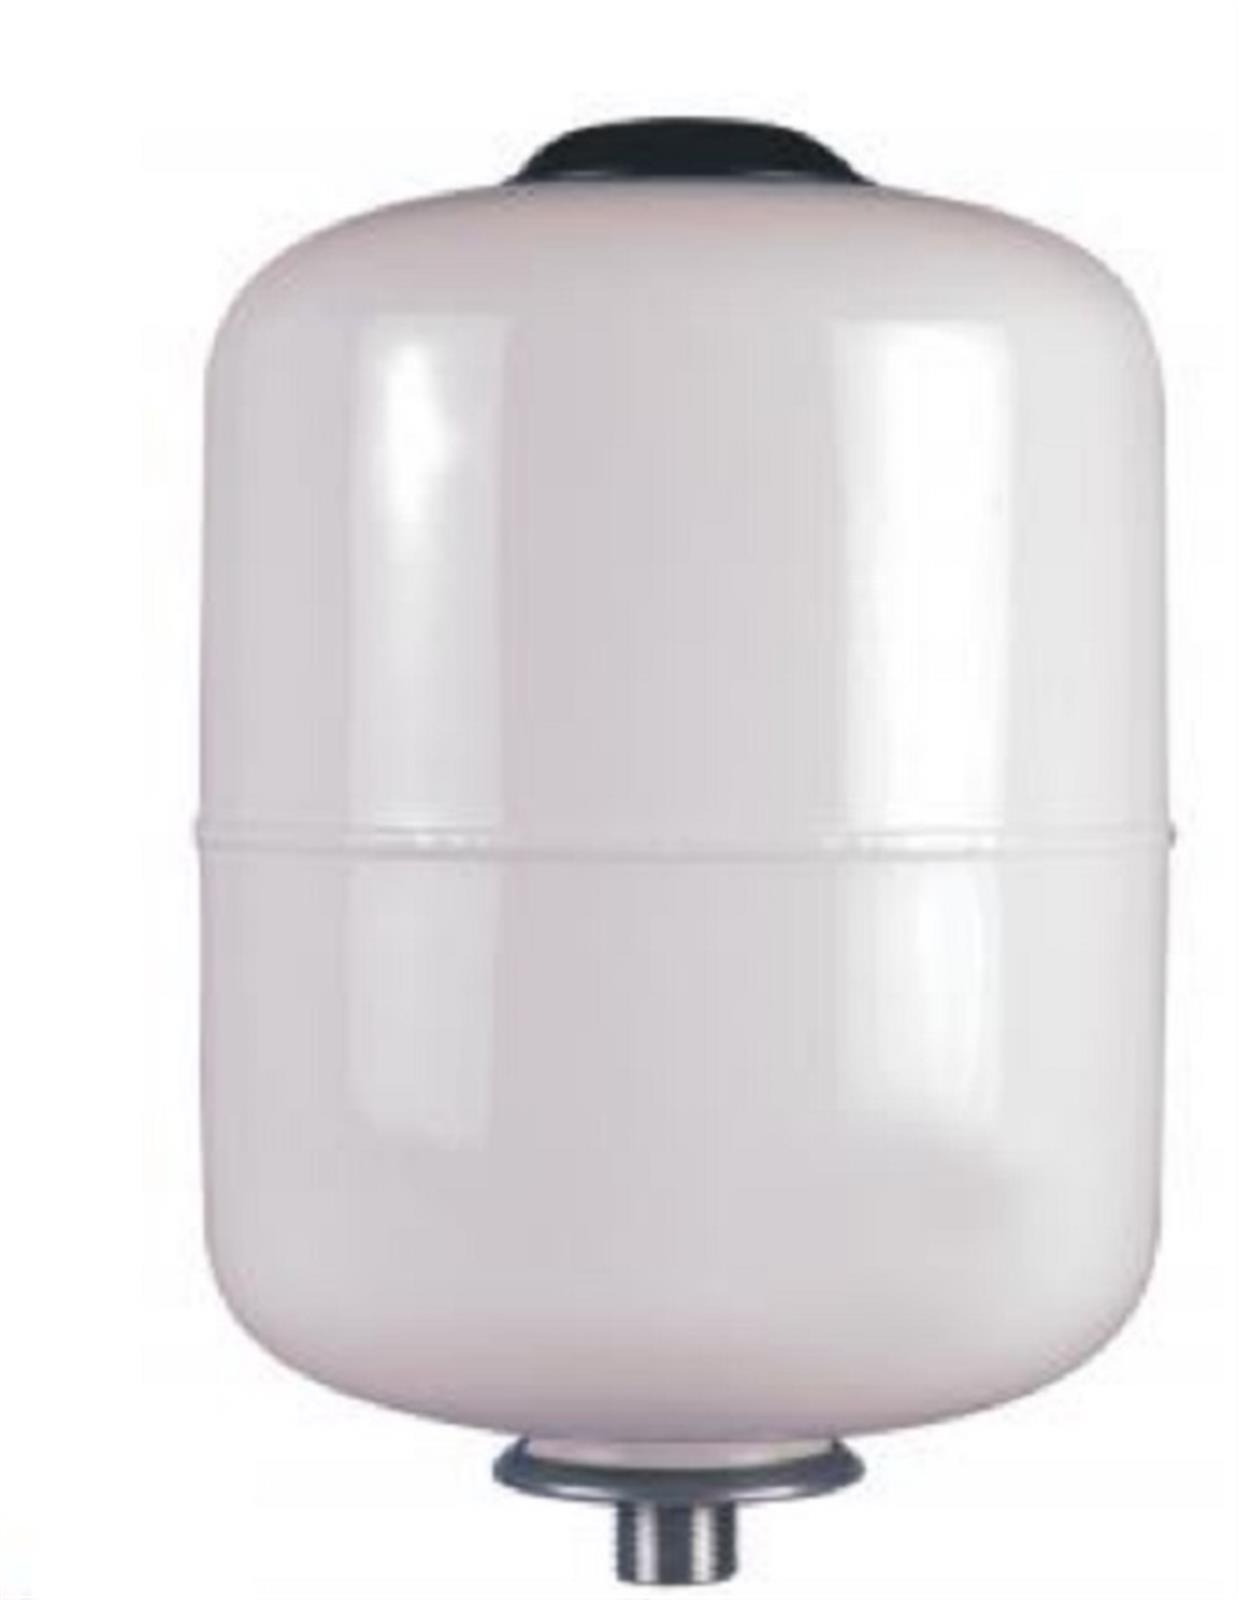 Vase d'expansion sanitaire VEXBAL - Capacité: 5 L - Diamètre: 16 cm - Hauteur: 30 cm - BLANC